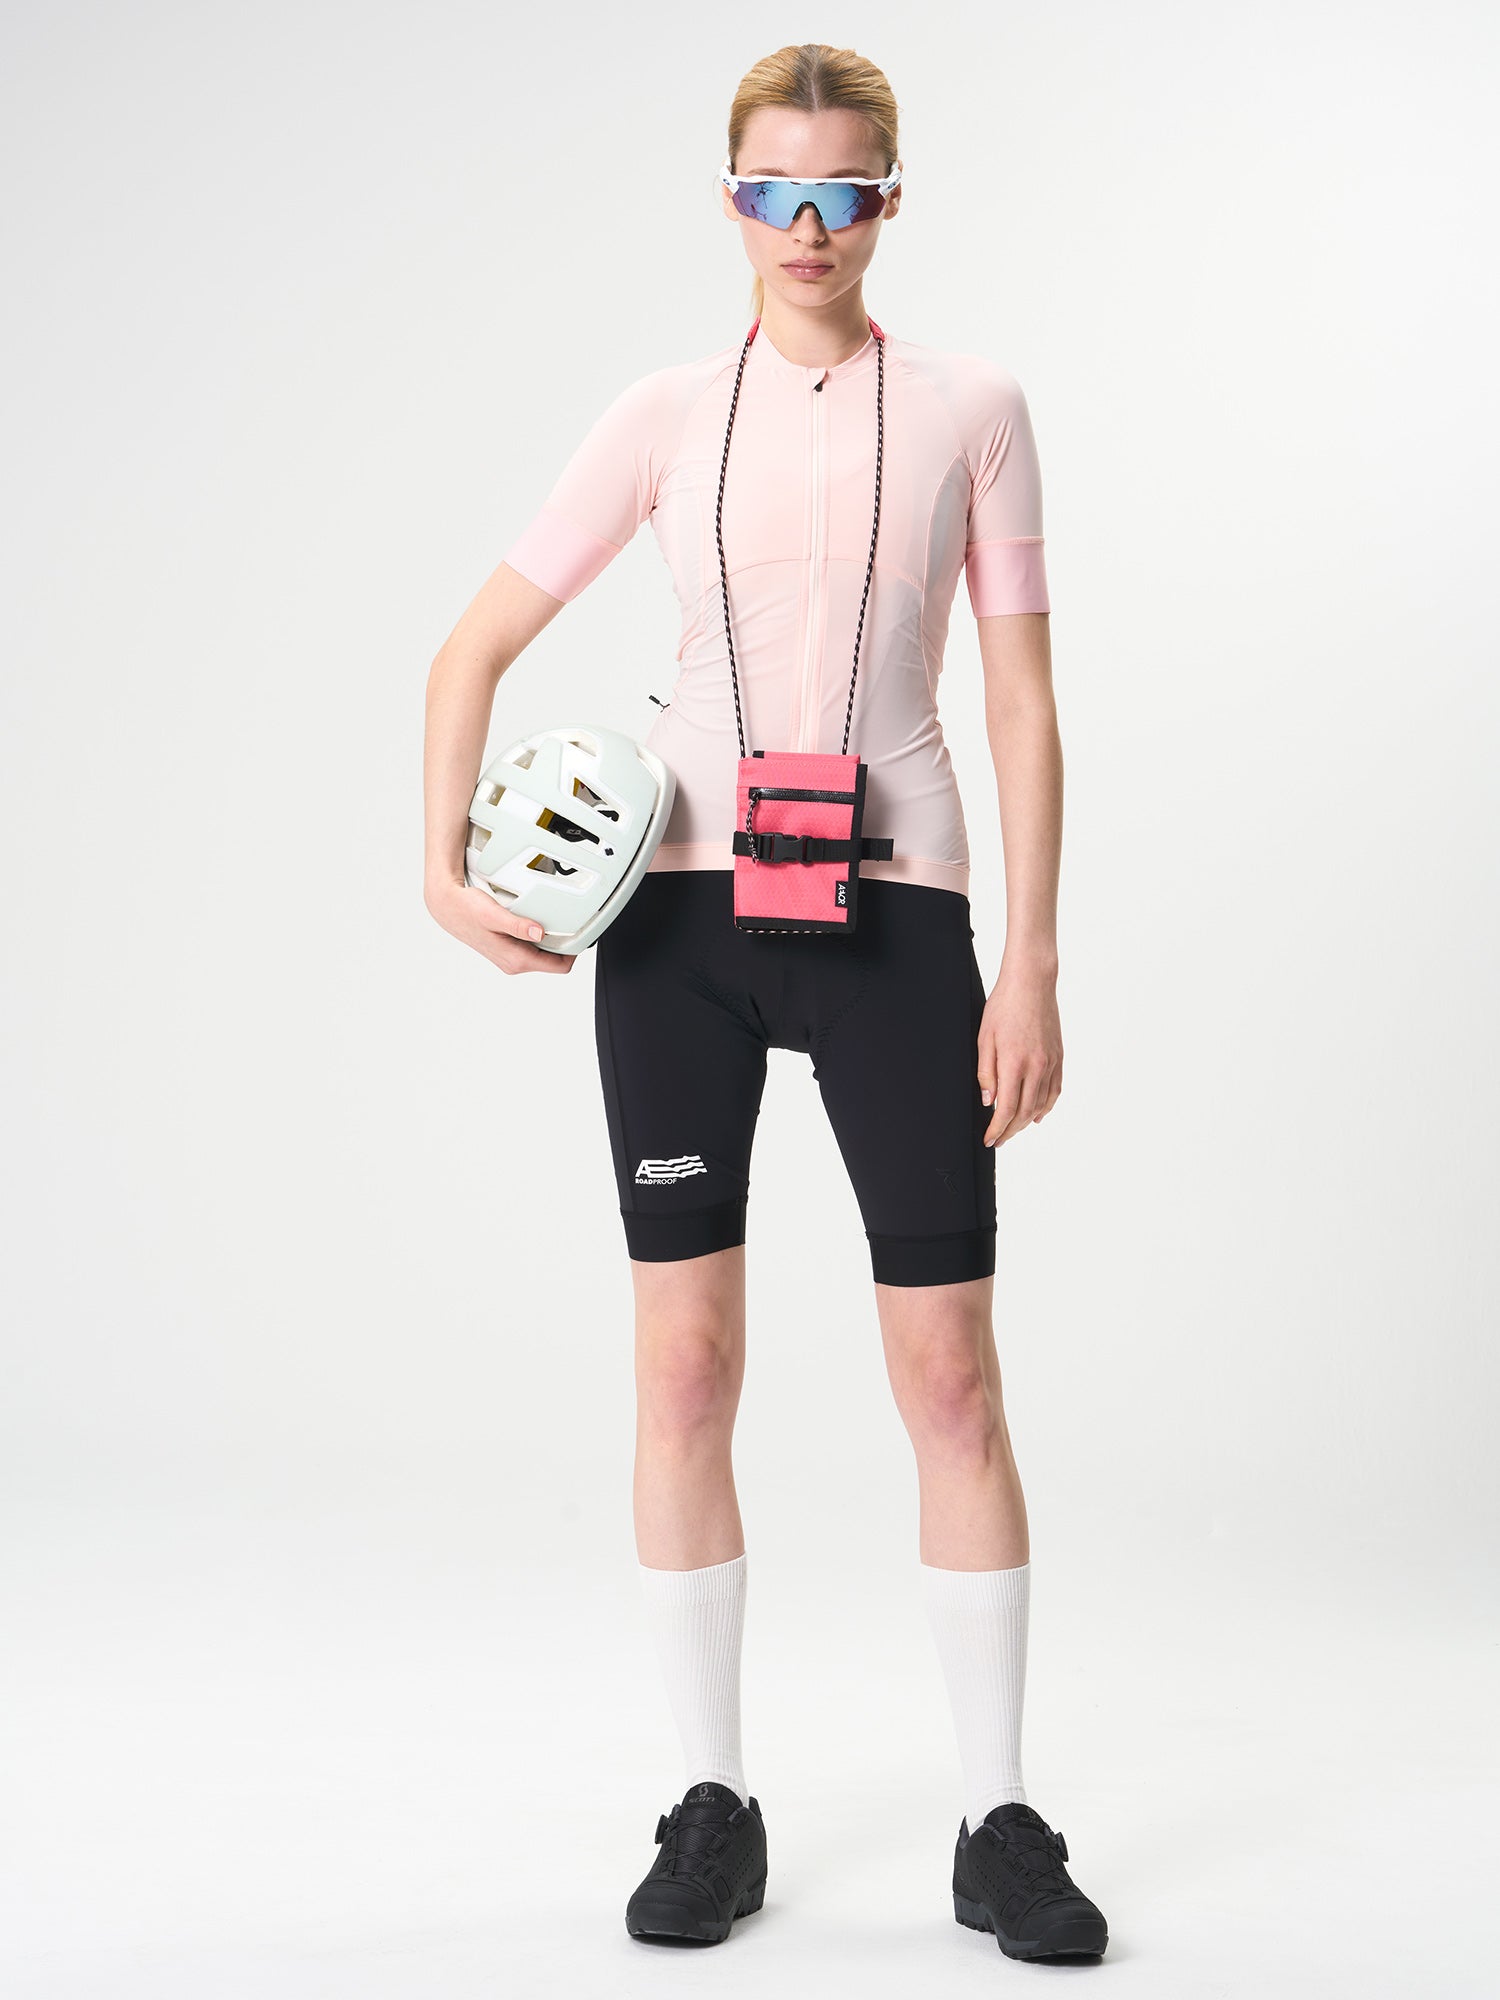 AEVOR Bike Saddle Bag / GIRO SONDERMODELL - Proof Pink Flash